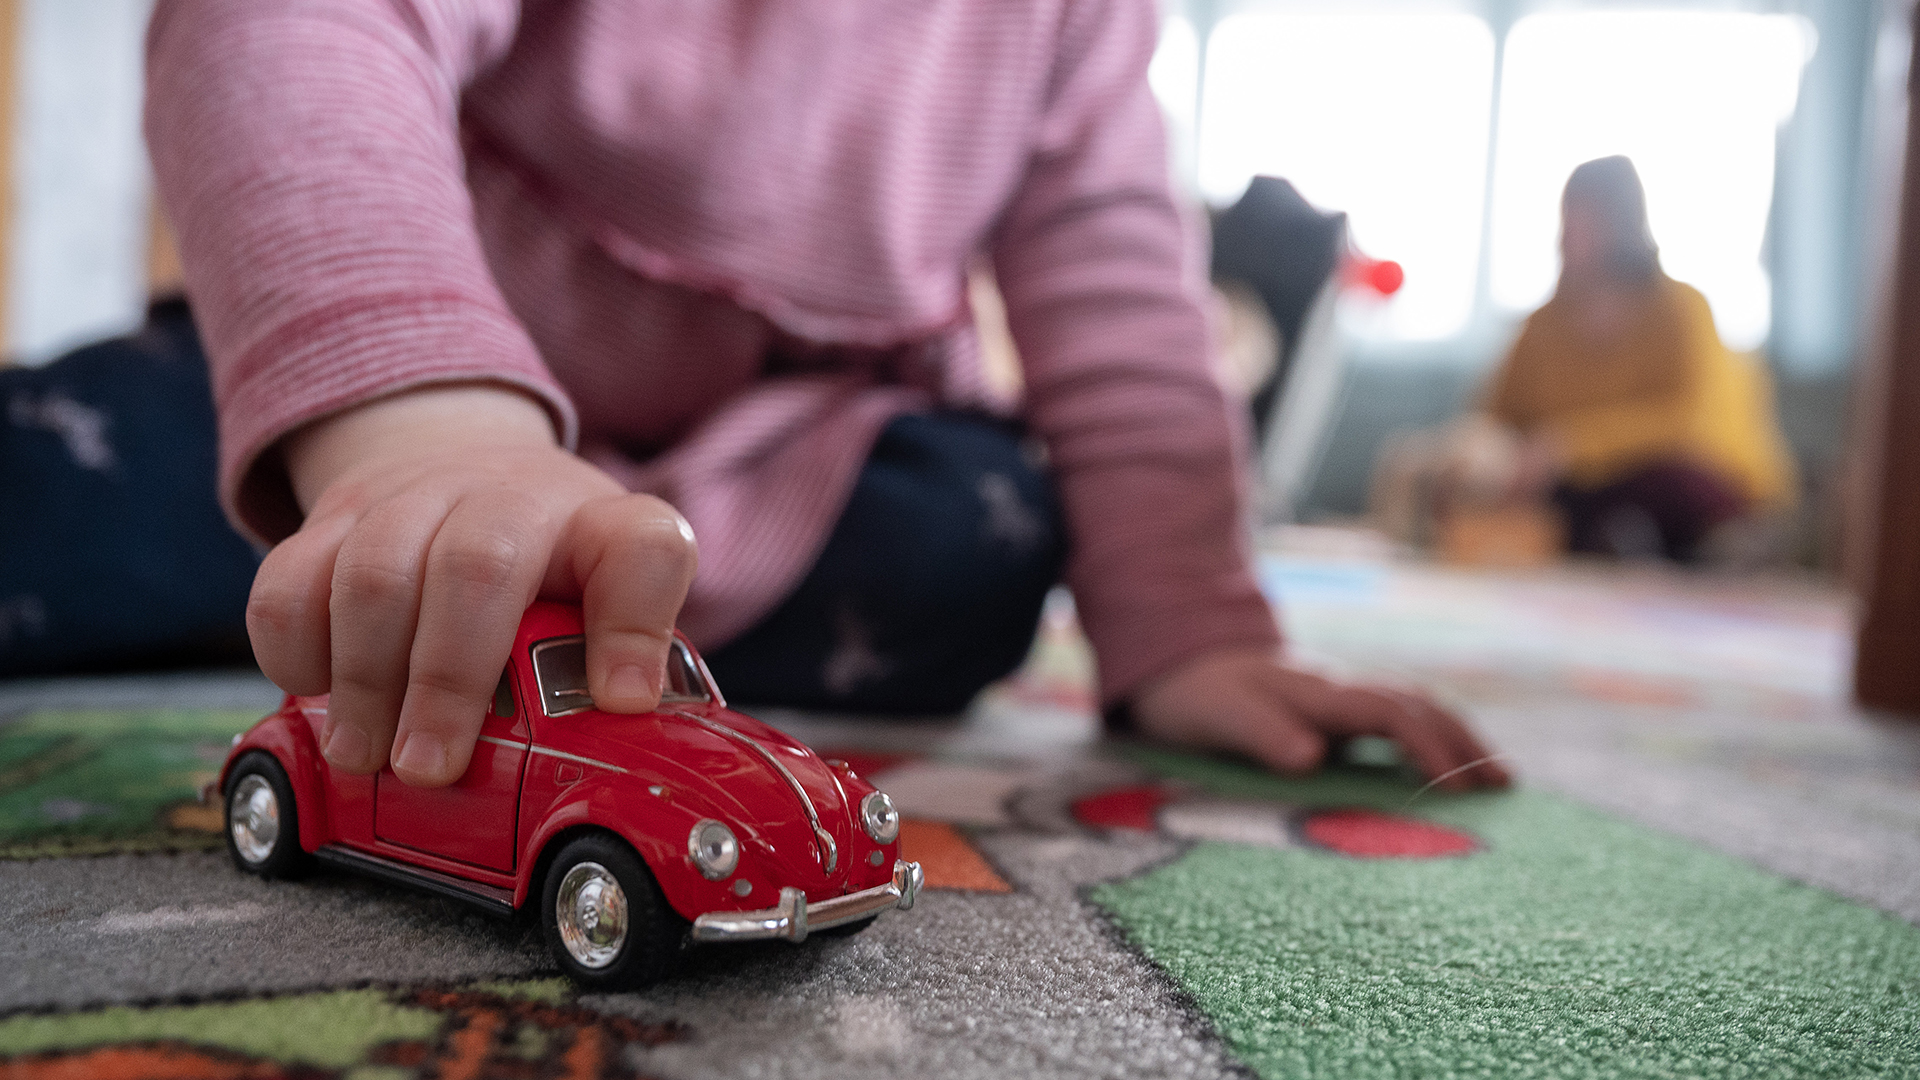 Kind spielt mit einem Spielzeugauto | picture alliance/dpa